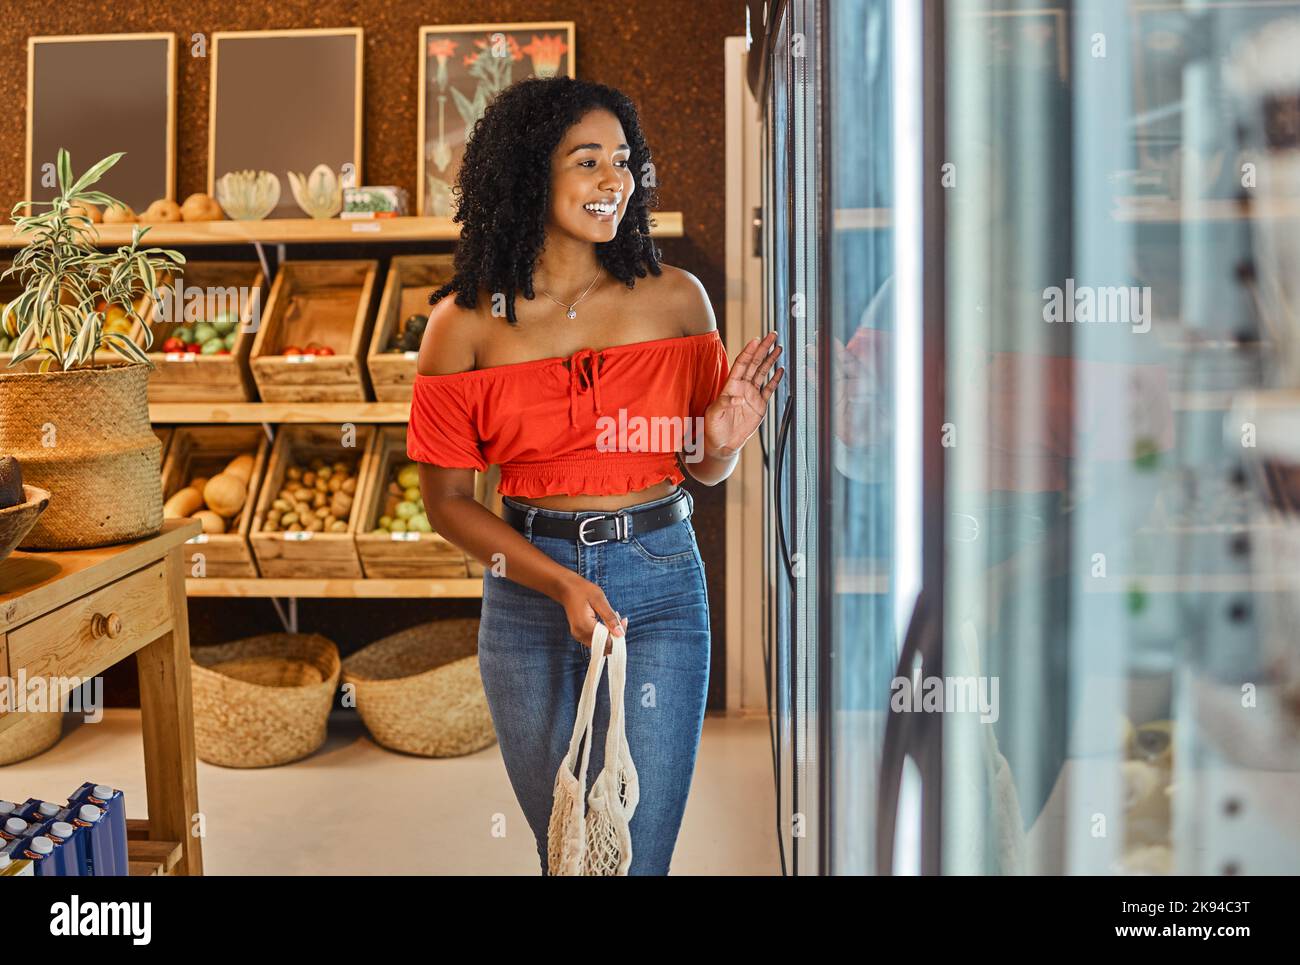 Schwarze Frau, Lebensmitteleinkäufe und Supermarkt, Kunden und Lebensmittel, Lächeln im Kühlschrank und glücklich mit Einzelhandel Rabatt. Junges, kaltes Lagerprodukt Stockfoto